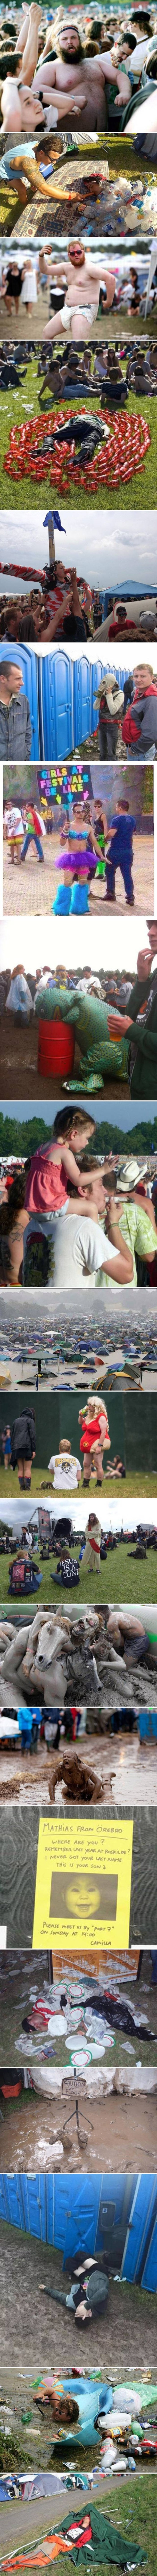 Ultra ipak nije vrhunac, ove fotke dokazuju da ima i puno ekstremnijih festivala